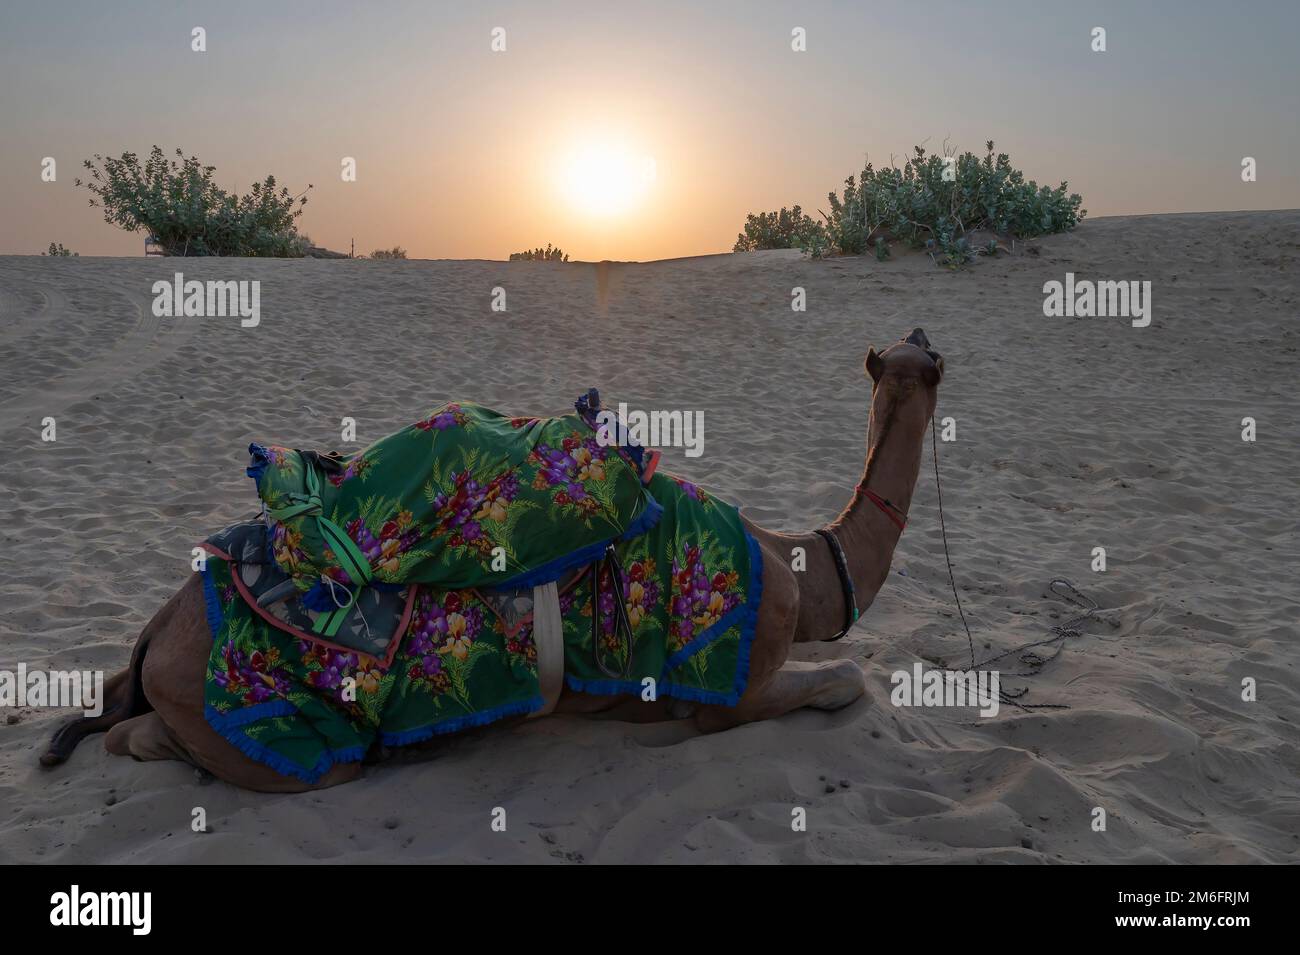 Sonnenaufgang am Horizont der Thar Wüste, Rajasthan, Indien. Dromedar, Dromedar-Kamel, arabisches Kamel oder einbuckeliges Kamel mit farbenfrohem Rajasthani dr Stockfoto